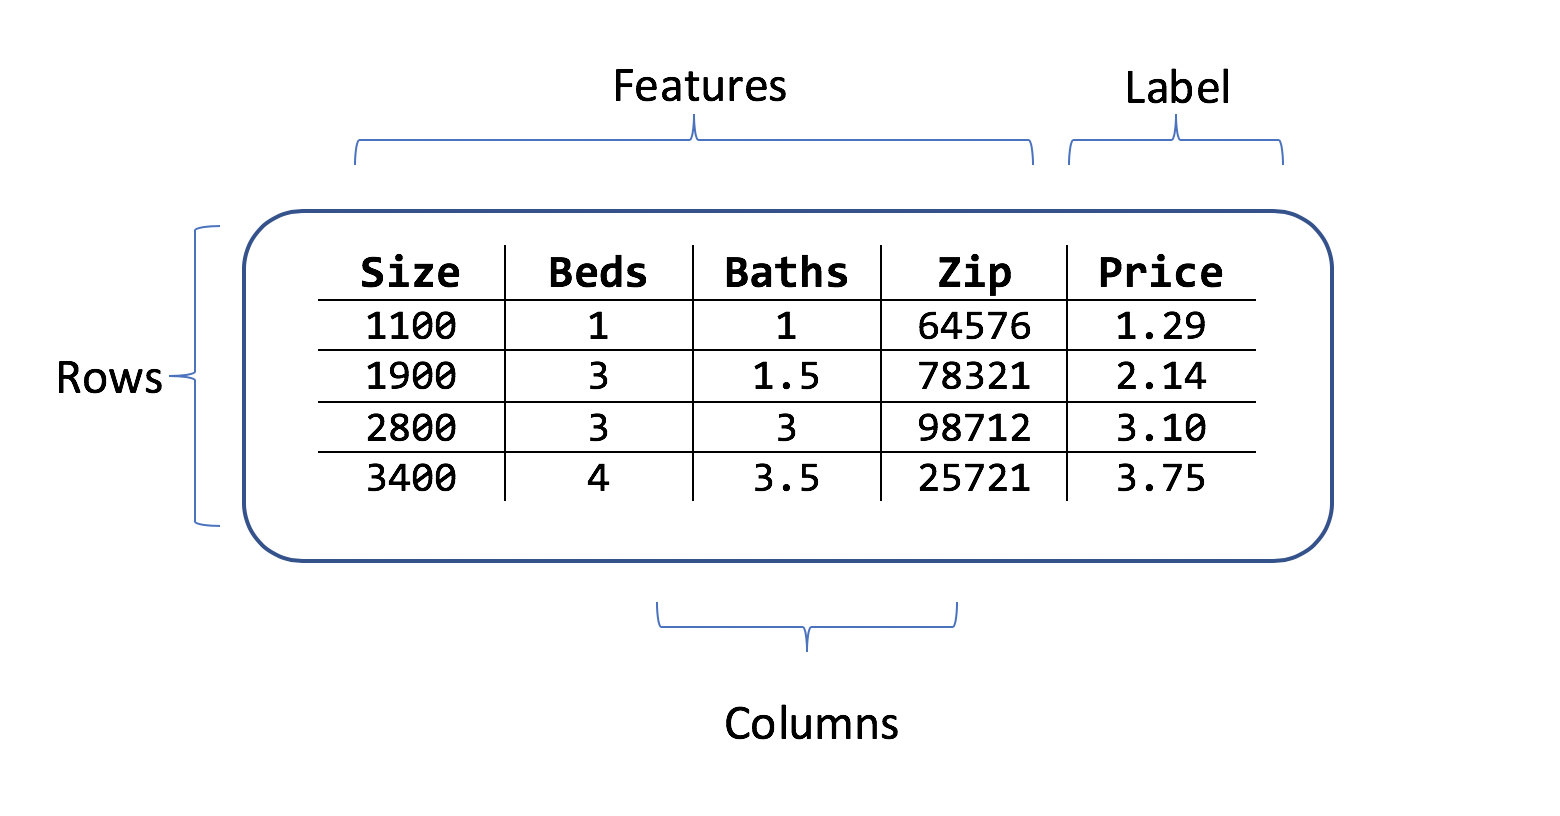 Tabela que mostra linhas e colunas de dados de preços de casas com características que consistem em tamanho, quartos, código postal e etiqueta de preço